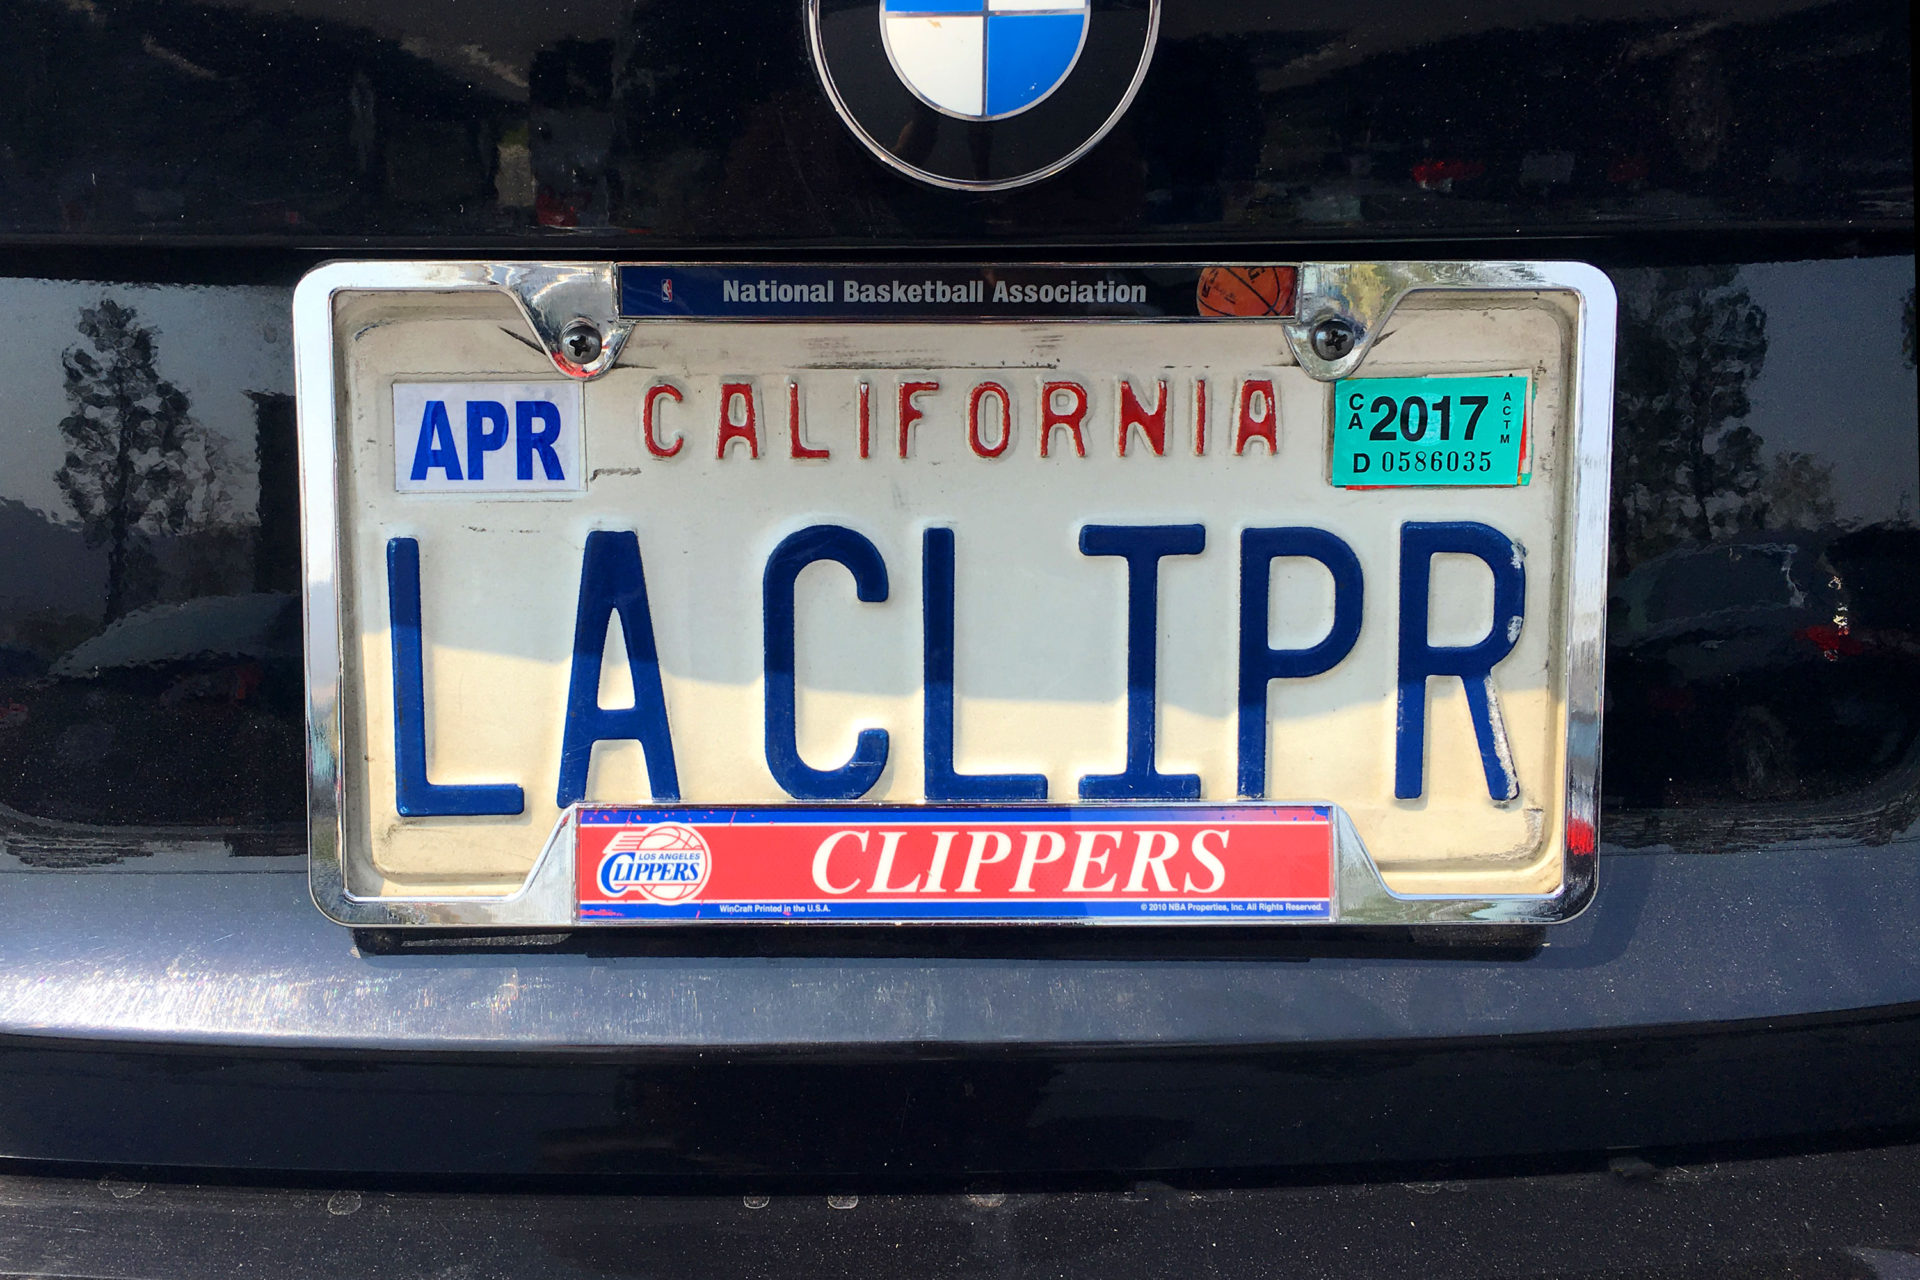 My LA Clippers license plate! - LACLIPR